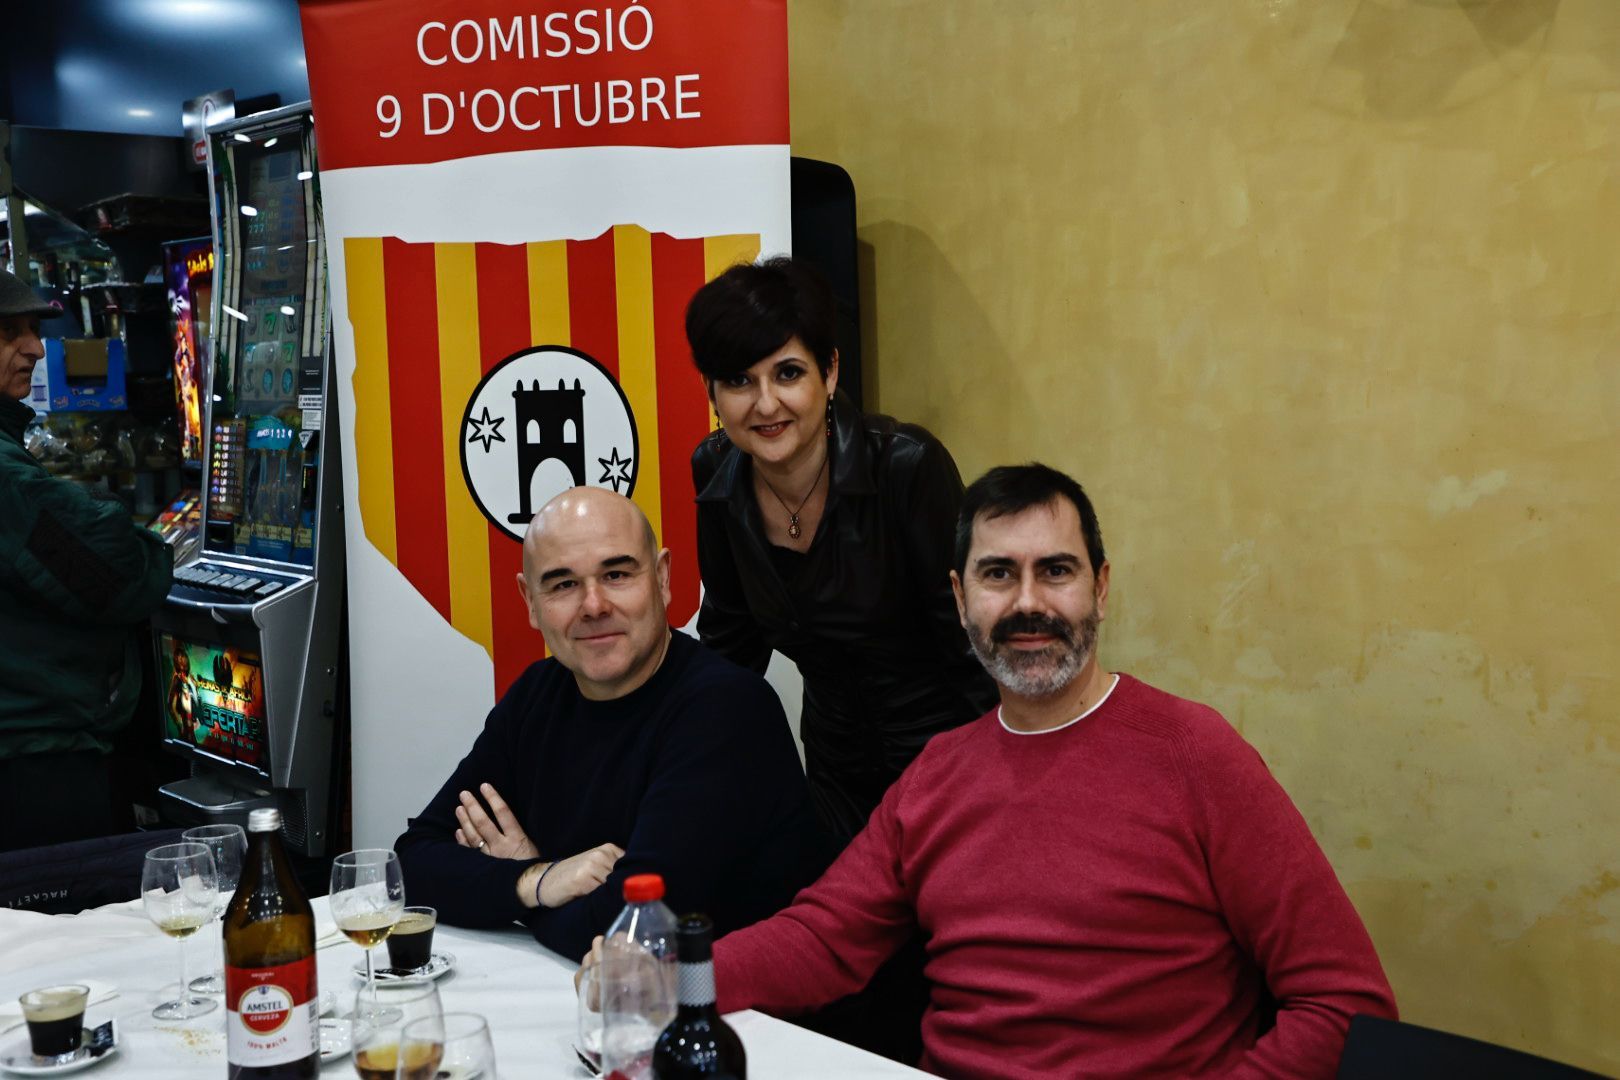 Comisión del 9 d'Octubre en la Feria de Sant Blai de Torrent